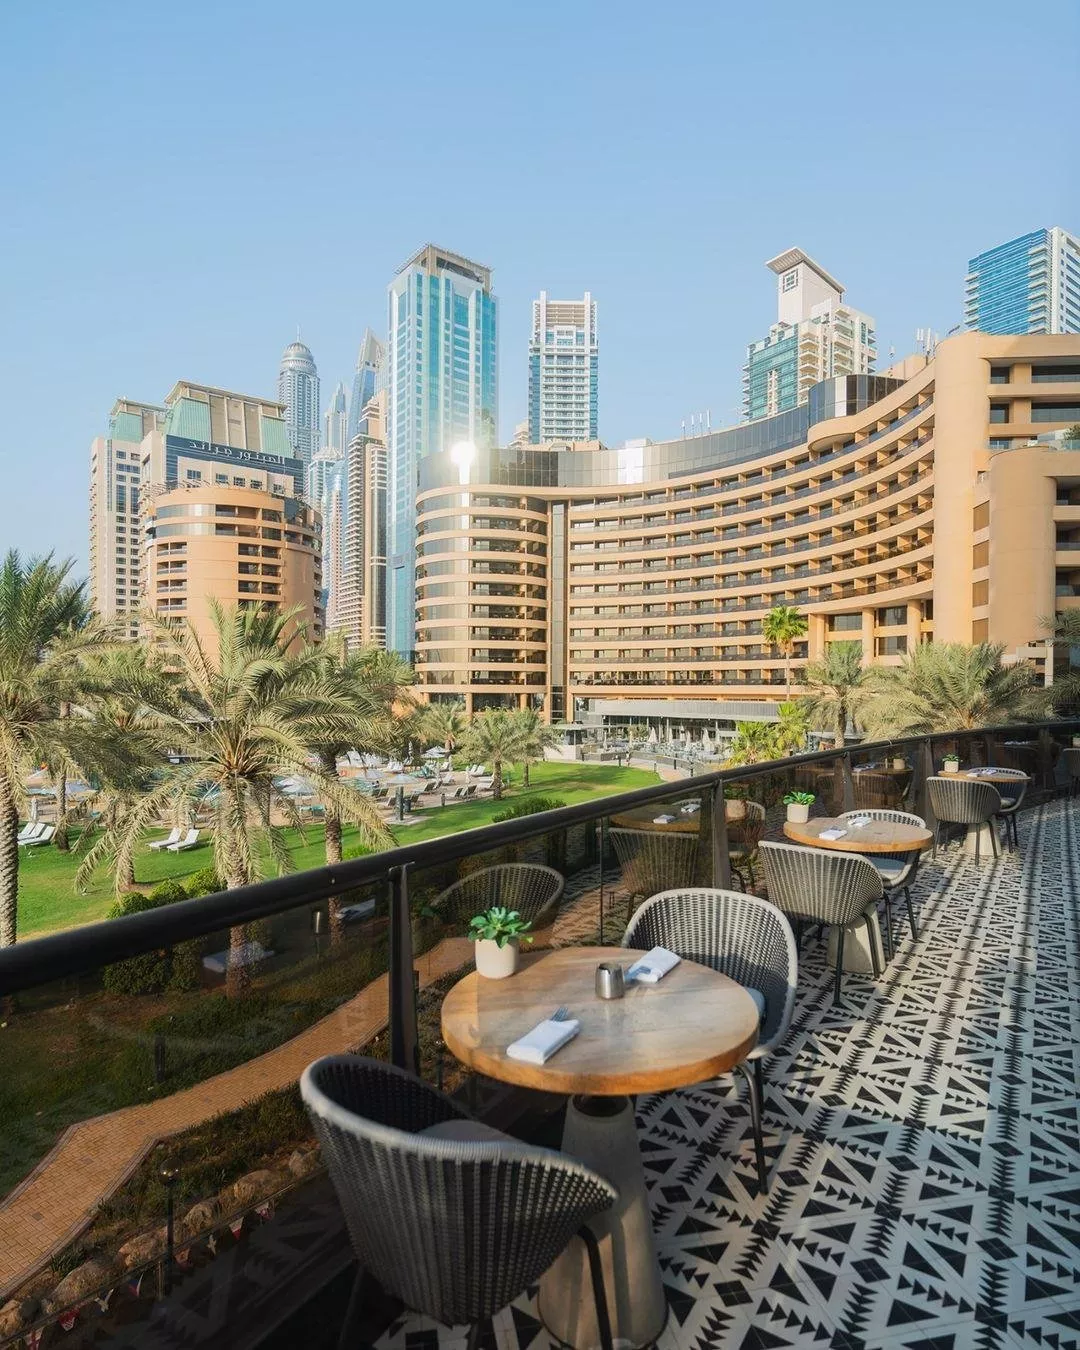 افضل فنادق ومنتجعات في الامارات: ضعيها على قائمة وجهاتكِ في هذا البلد